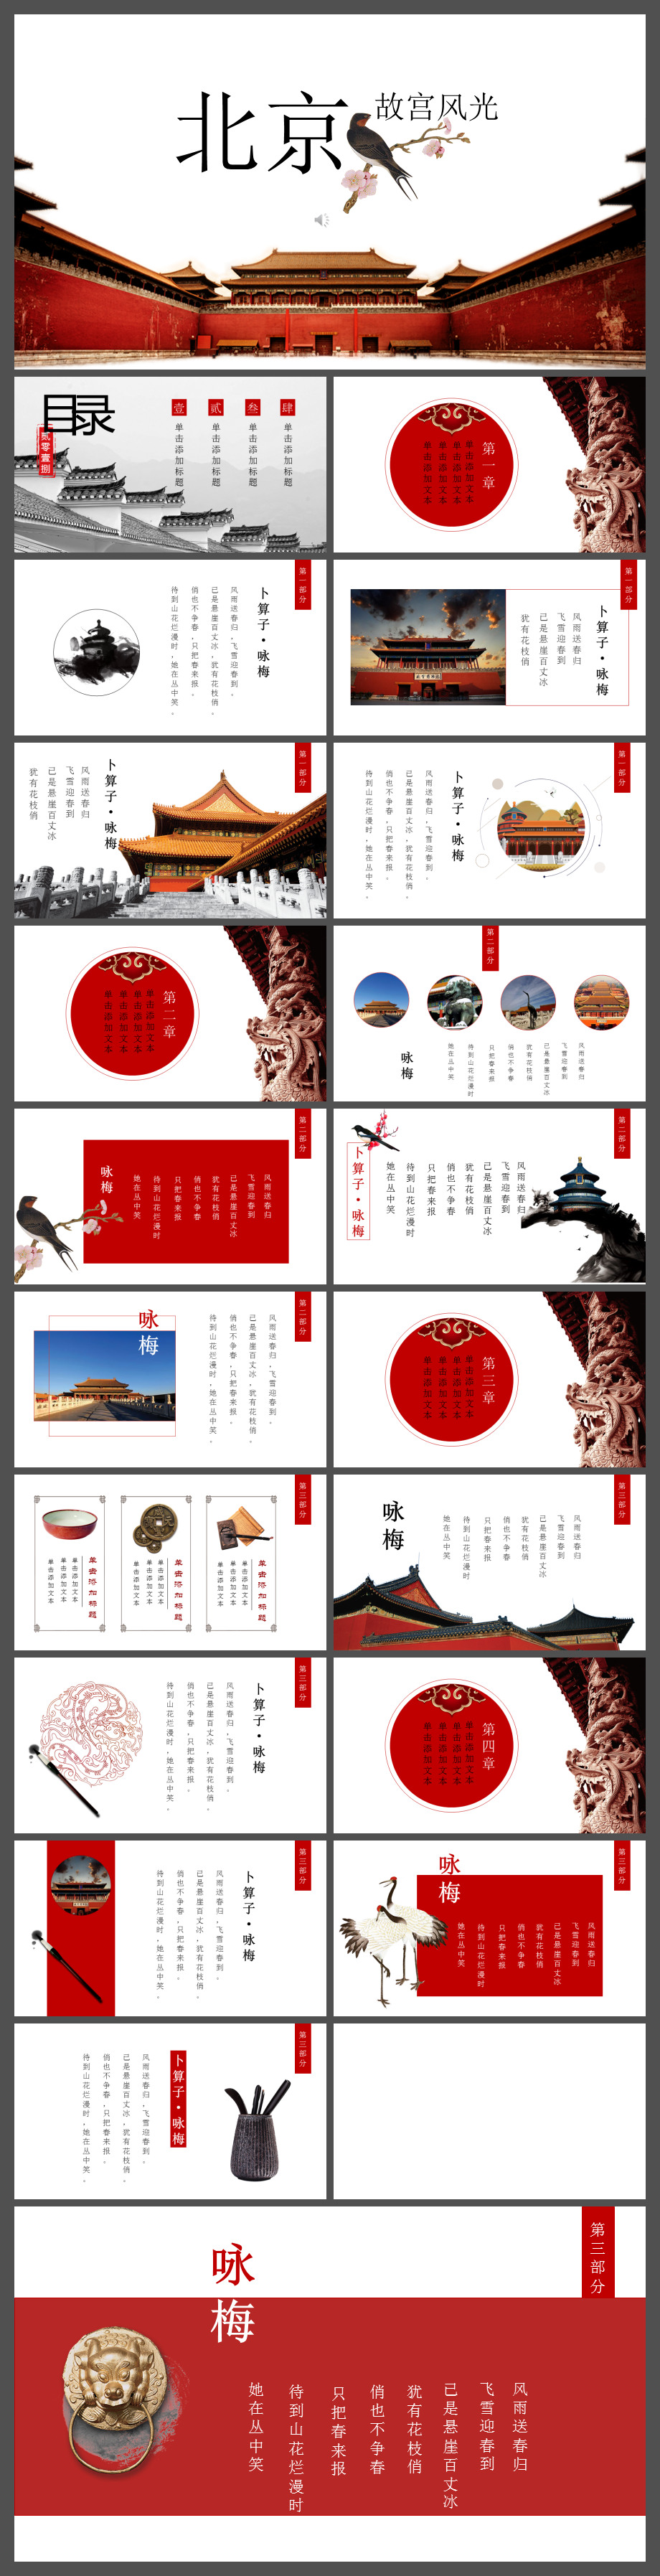 时尚个人北京故宫旅行相册PPT模板